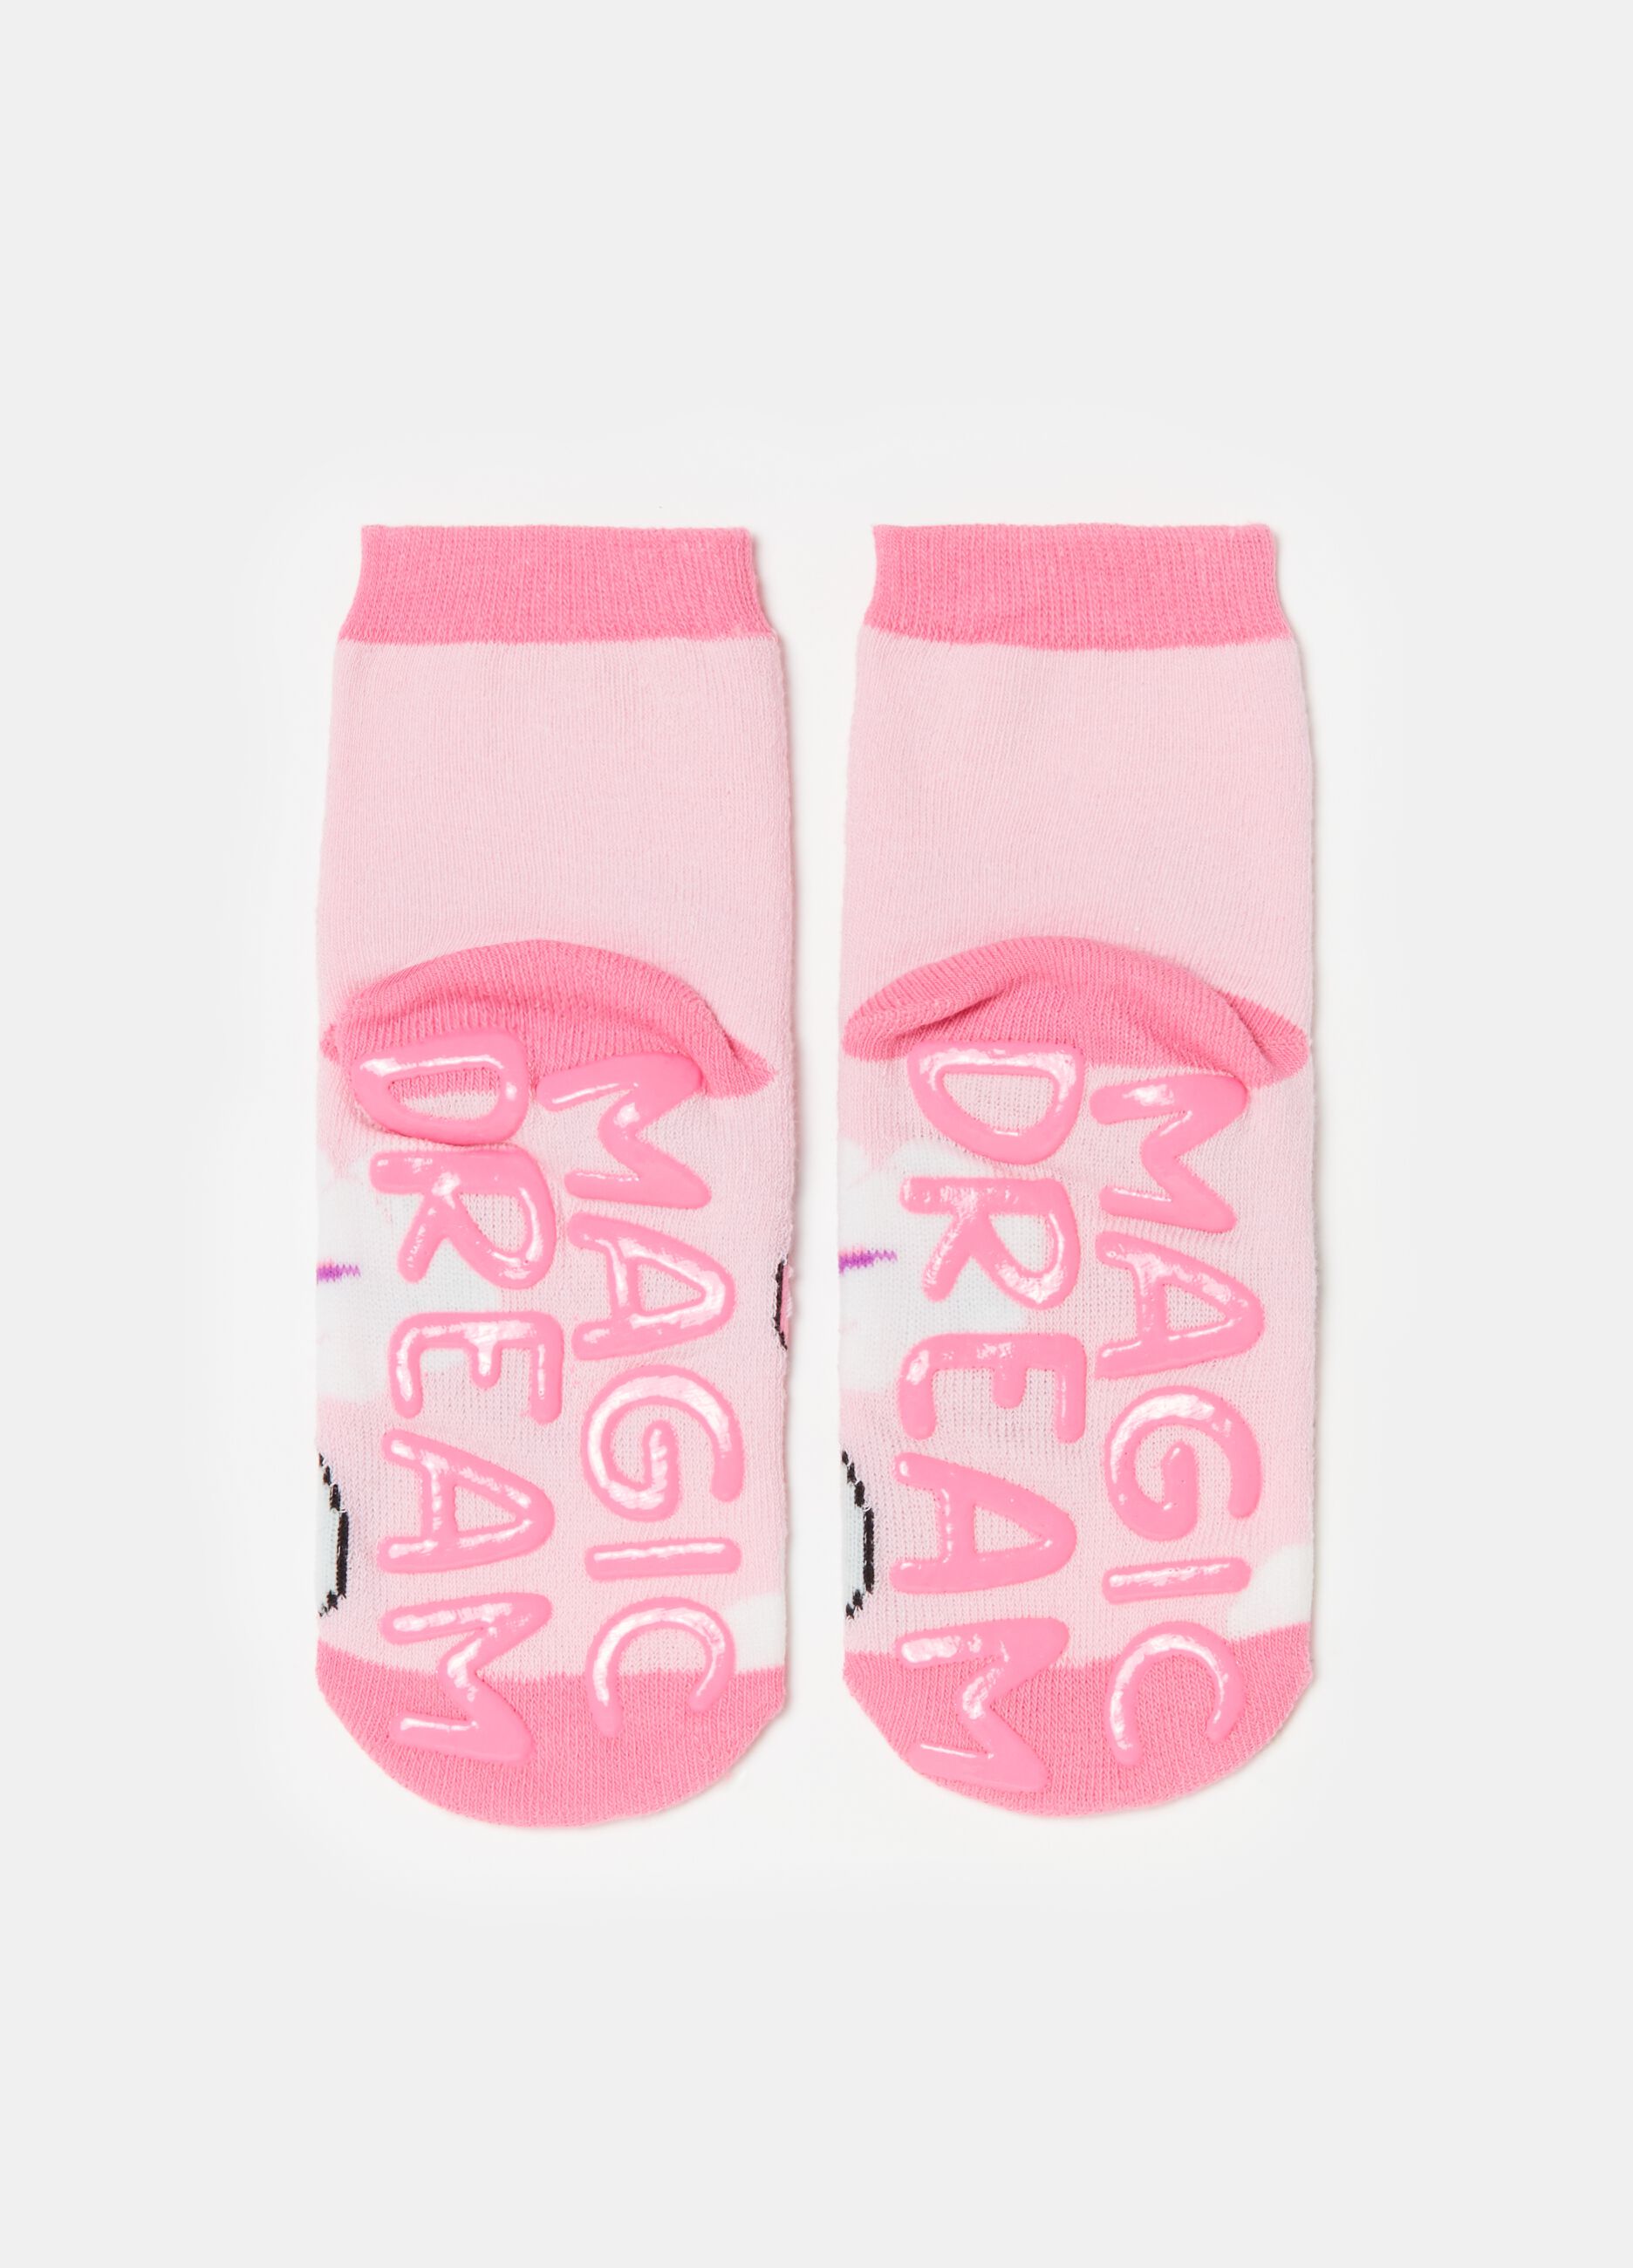 Slipper socks with kitten design